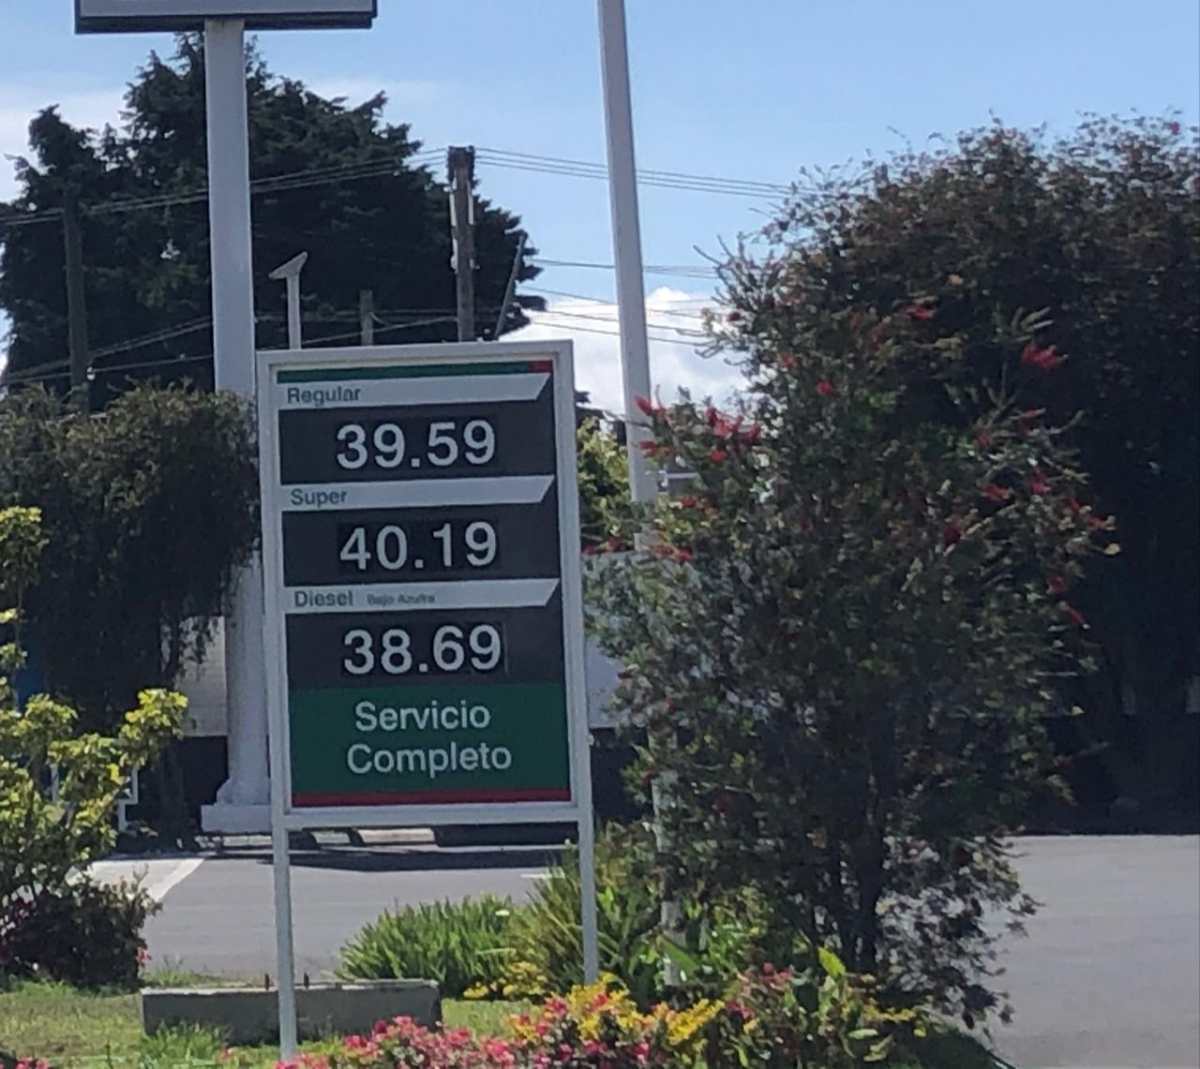 Otro incremento al precio de la gasolina: “Cuando entre el subsidio se seguirán pagando precios altos”, advierte usuario